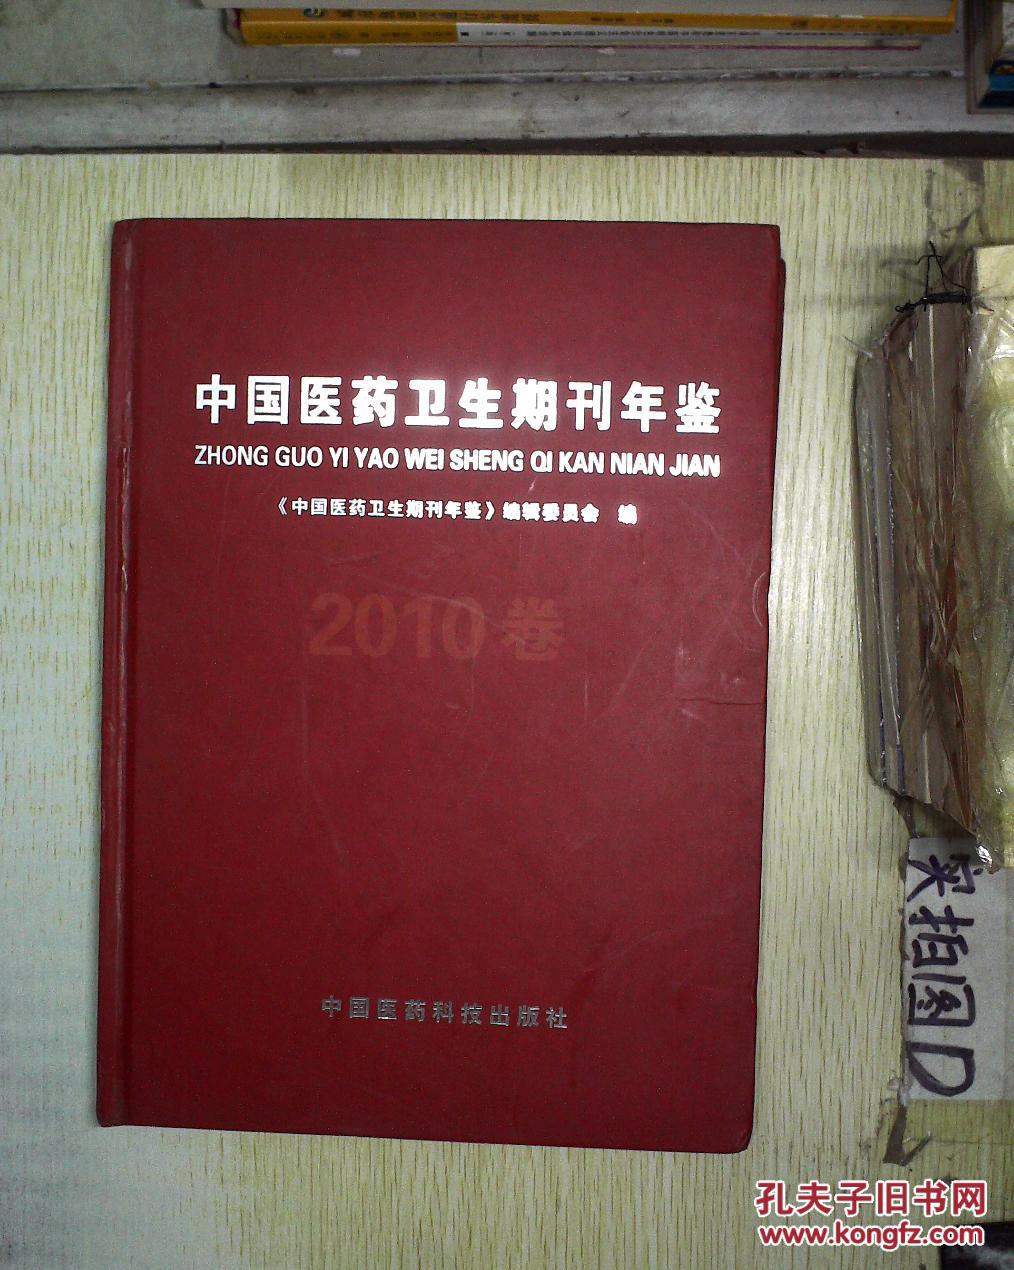 【图】中国医药卫生期刊年鉴. 2010卷 。_中国